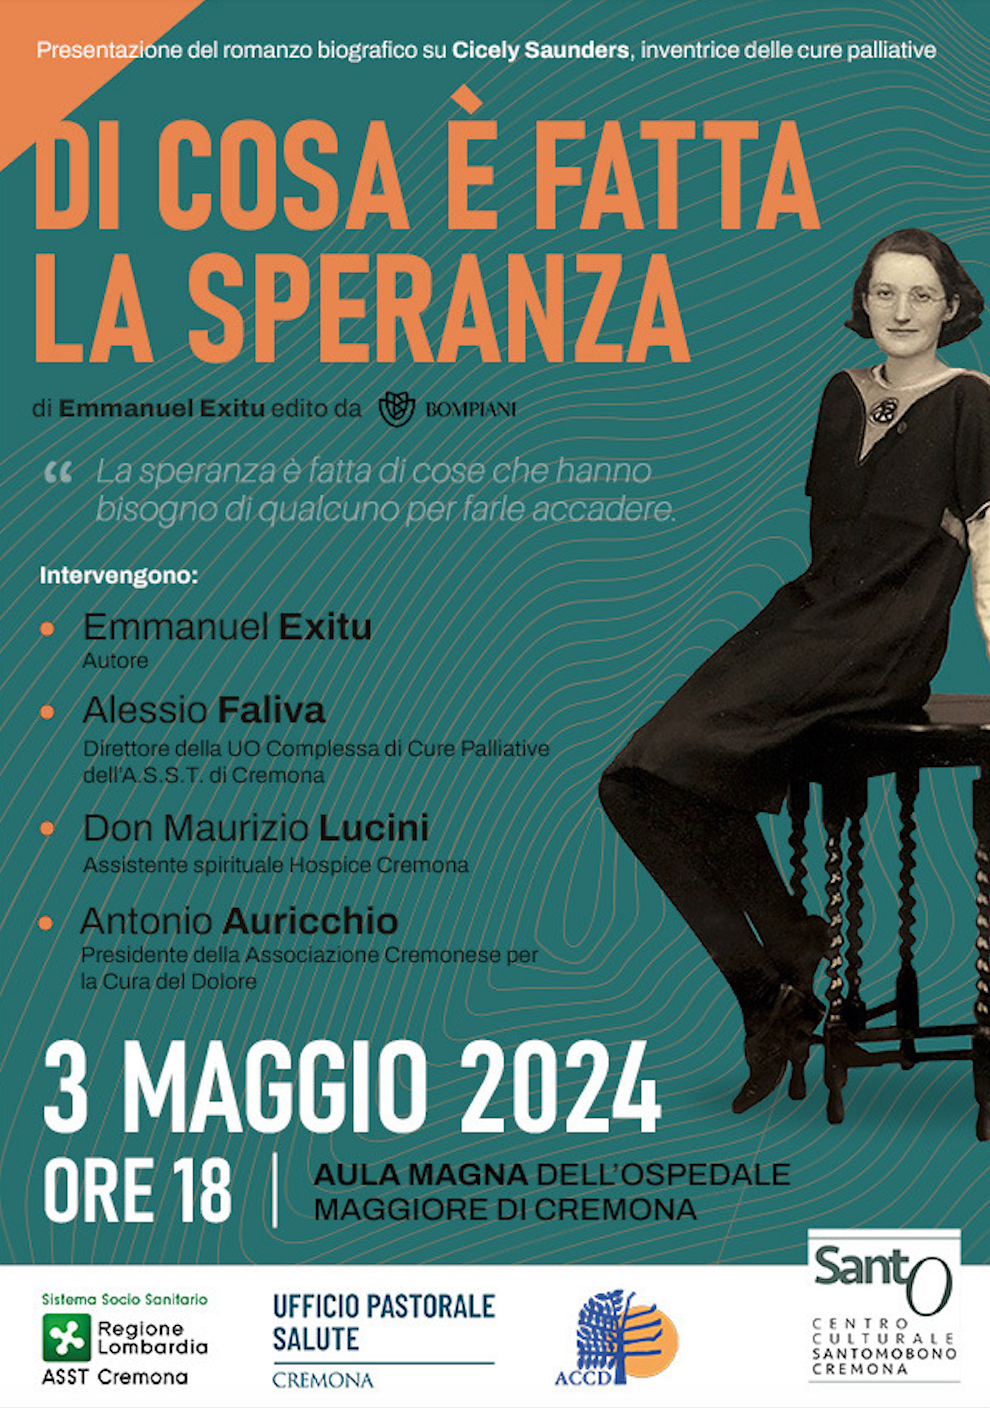 Featured image for “Cremona: Di cosa è fatta la speranza. Cicely Saunders”